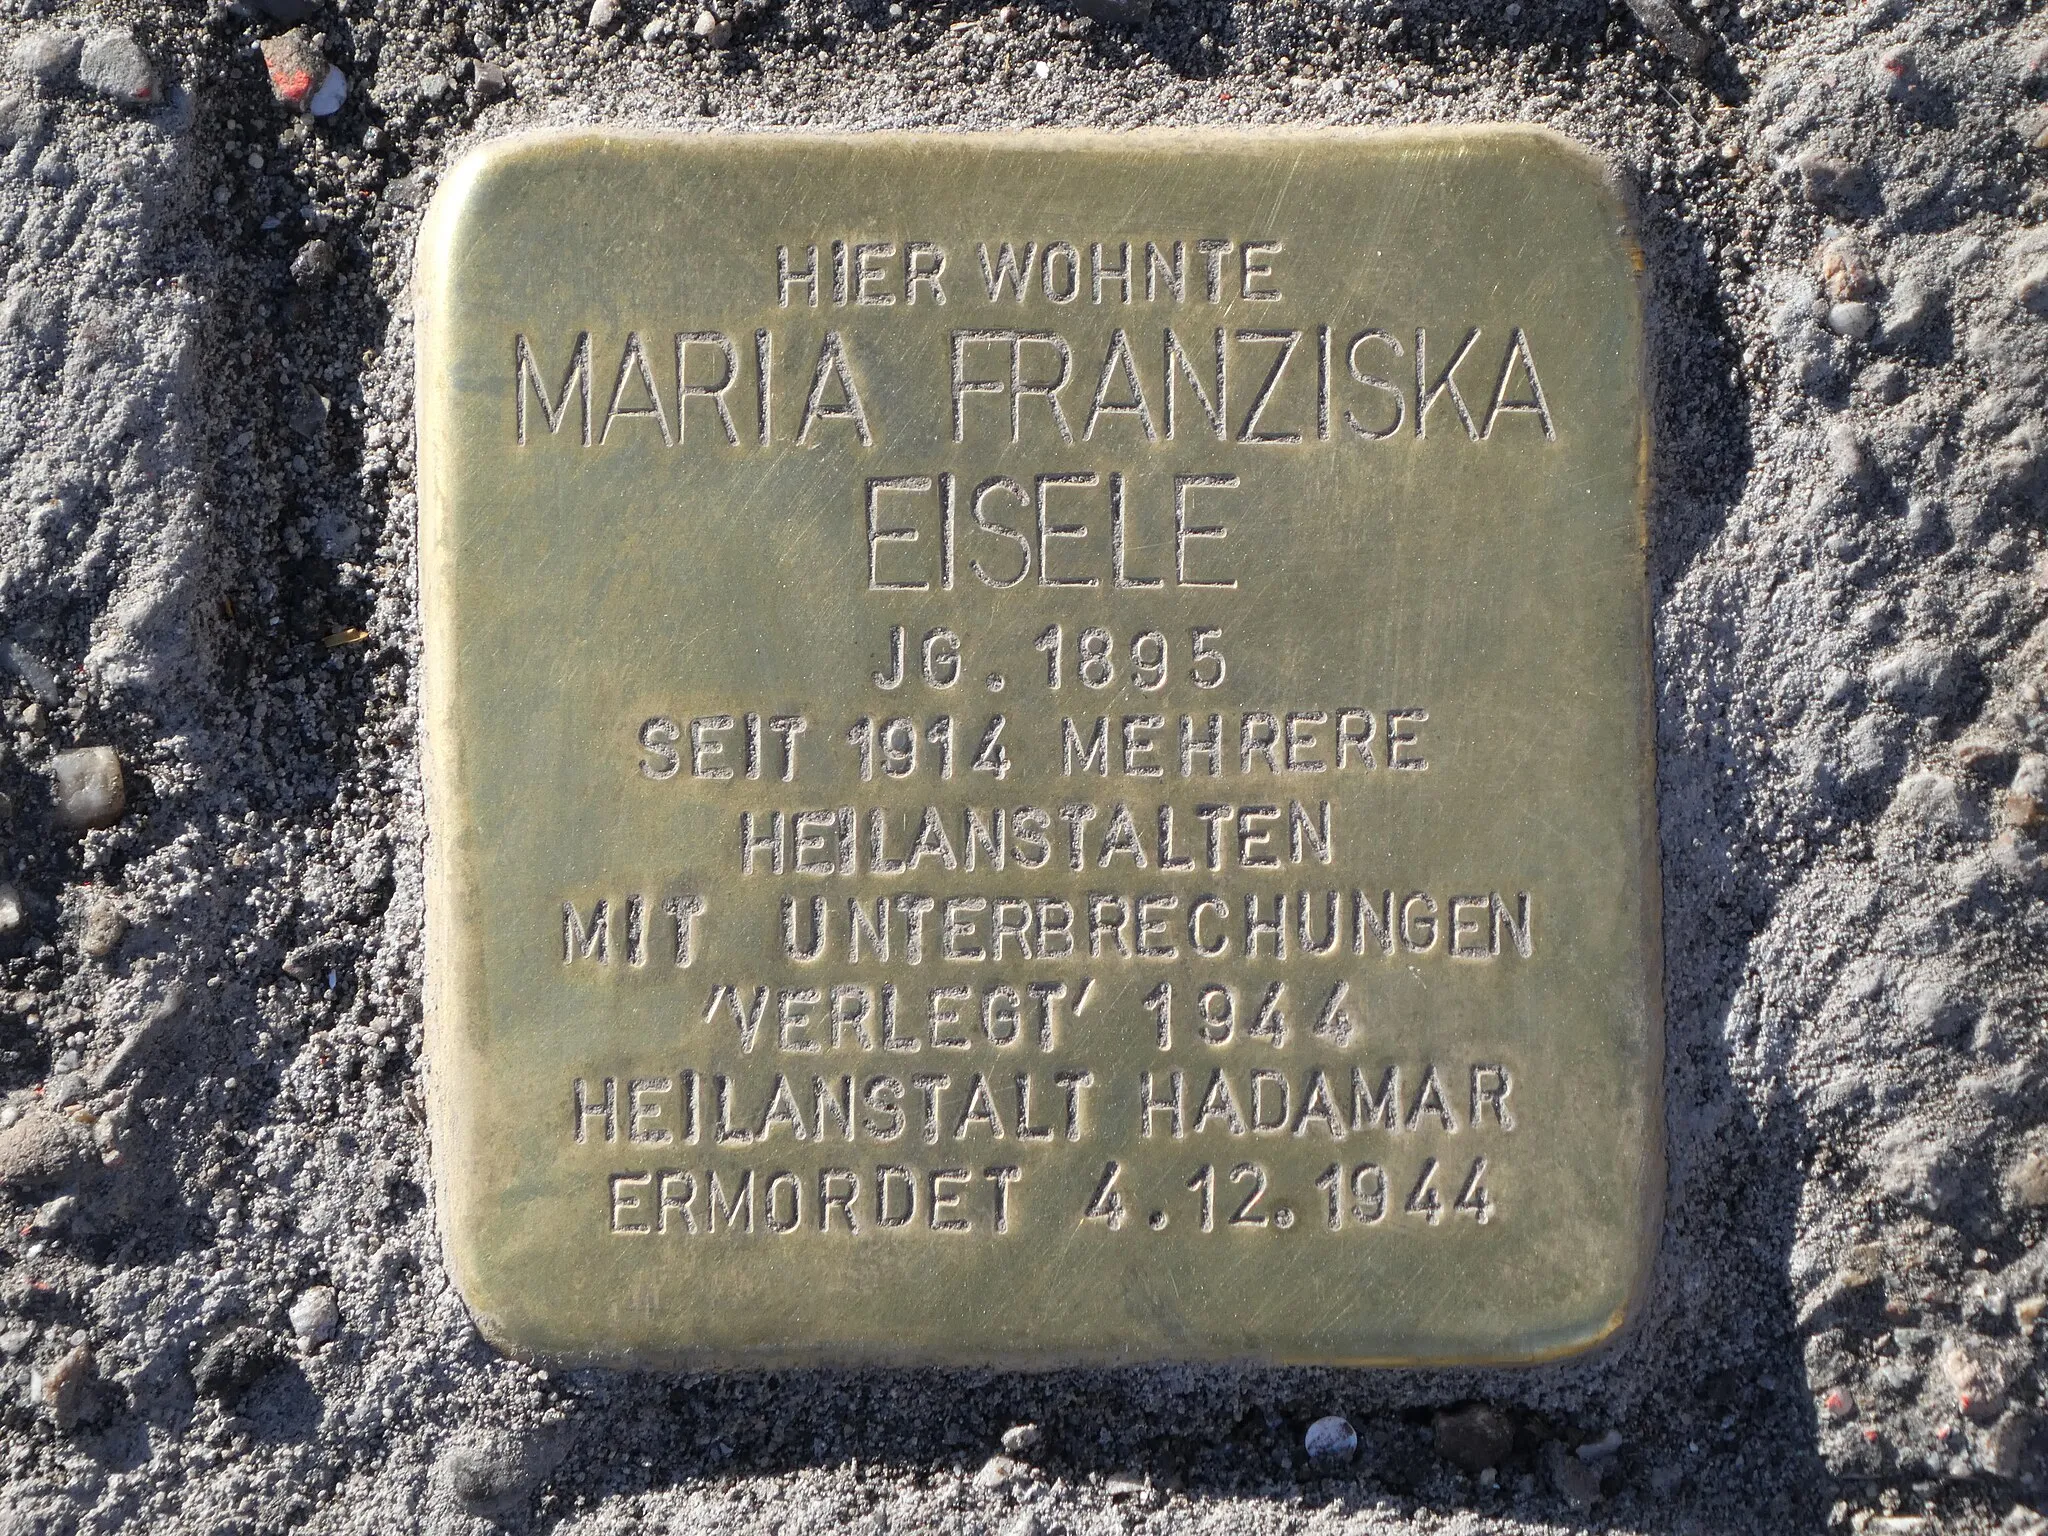 Photo showing: Ooser Sophienstraße 4, 76532 Baden-Baden, Germany, Hier wohnte Maria Franziska Eisele, Jg. 1895, Seit 1914 mehrere Heilanstalten mit Unterbrechungen, 'verlegt' 1944 Hailanstalt Hadamar, ermordet 4.12.1944